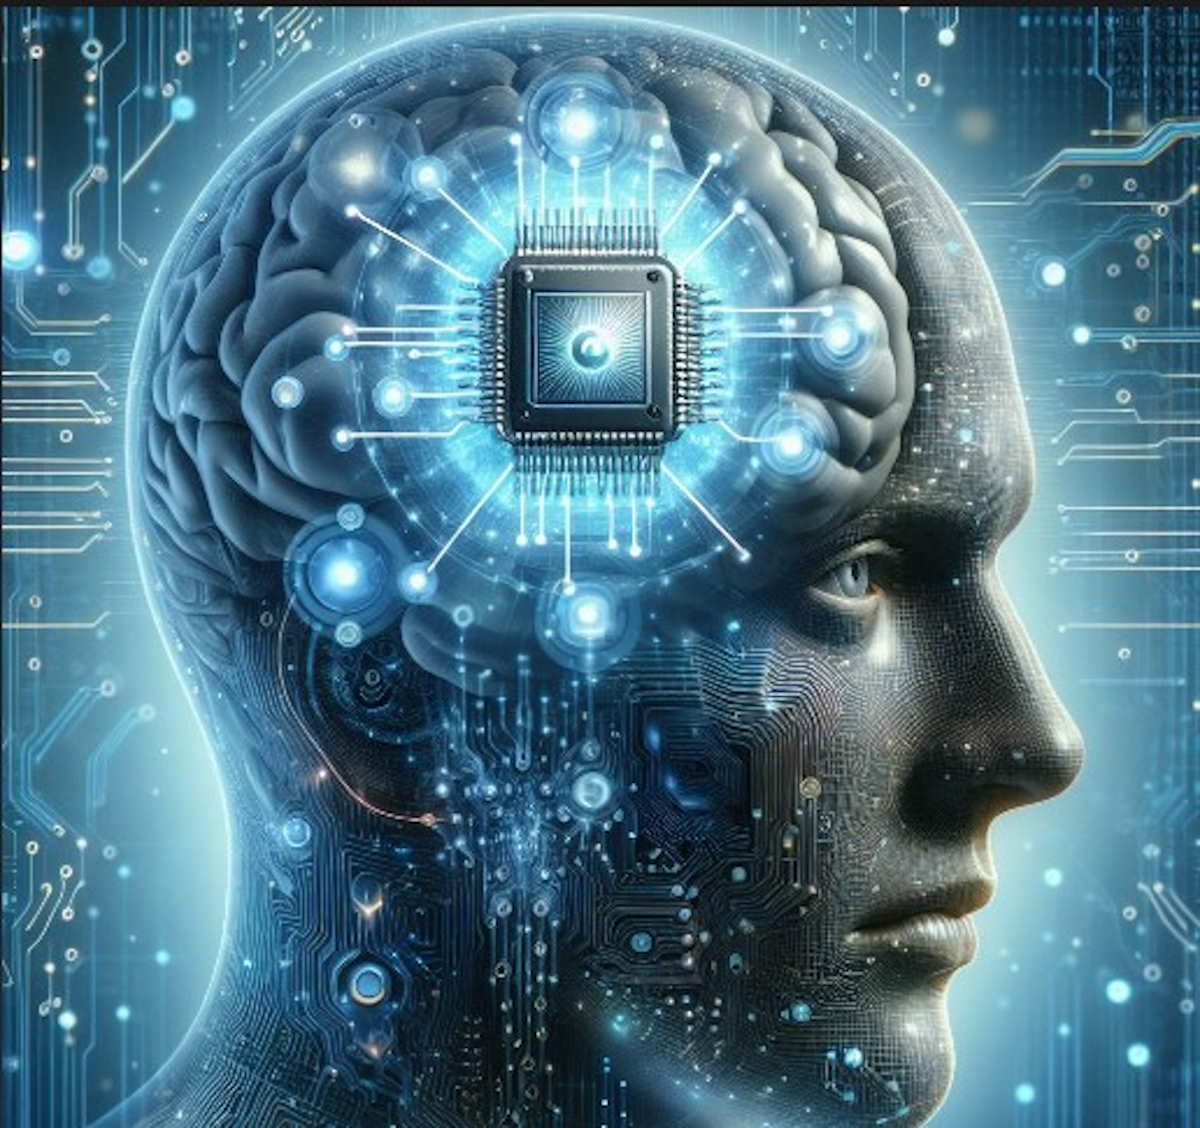 La imagen que muestra la implantación de un chip cerebral en un humano